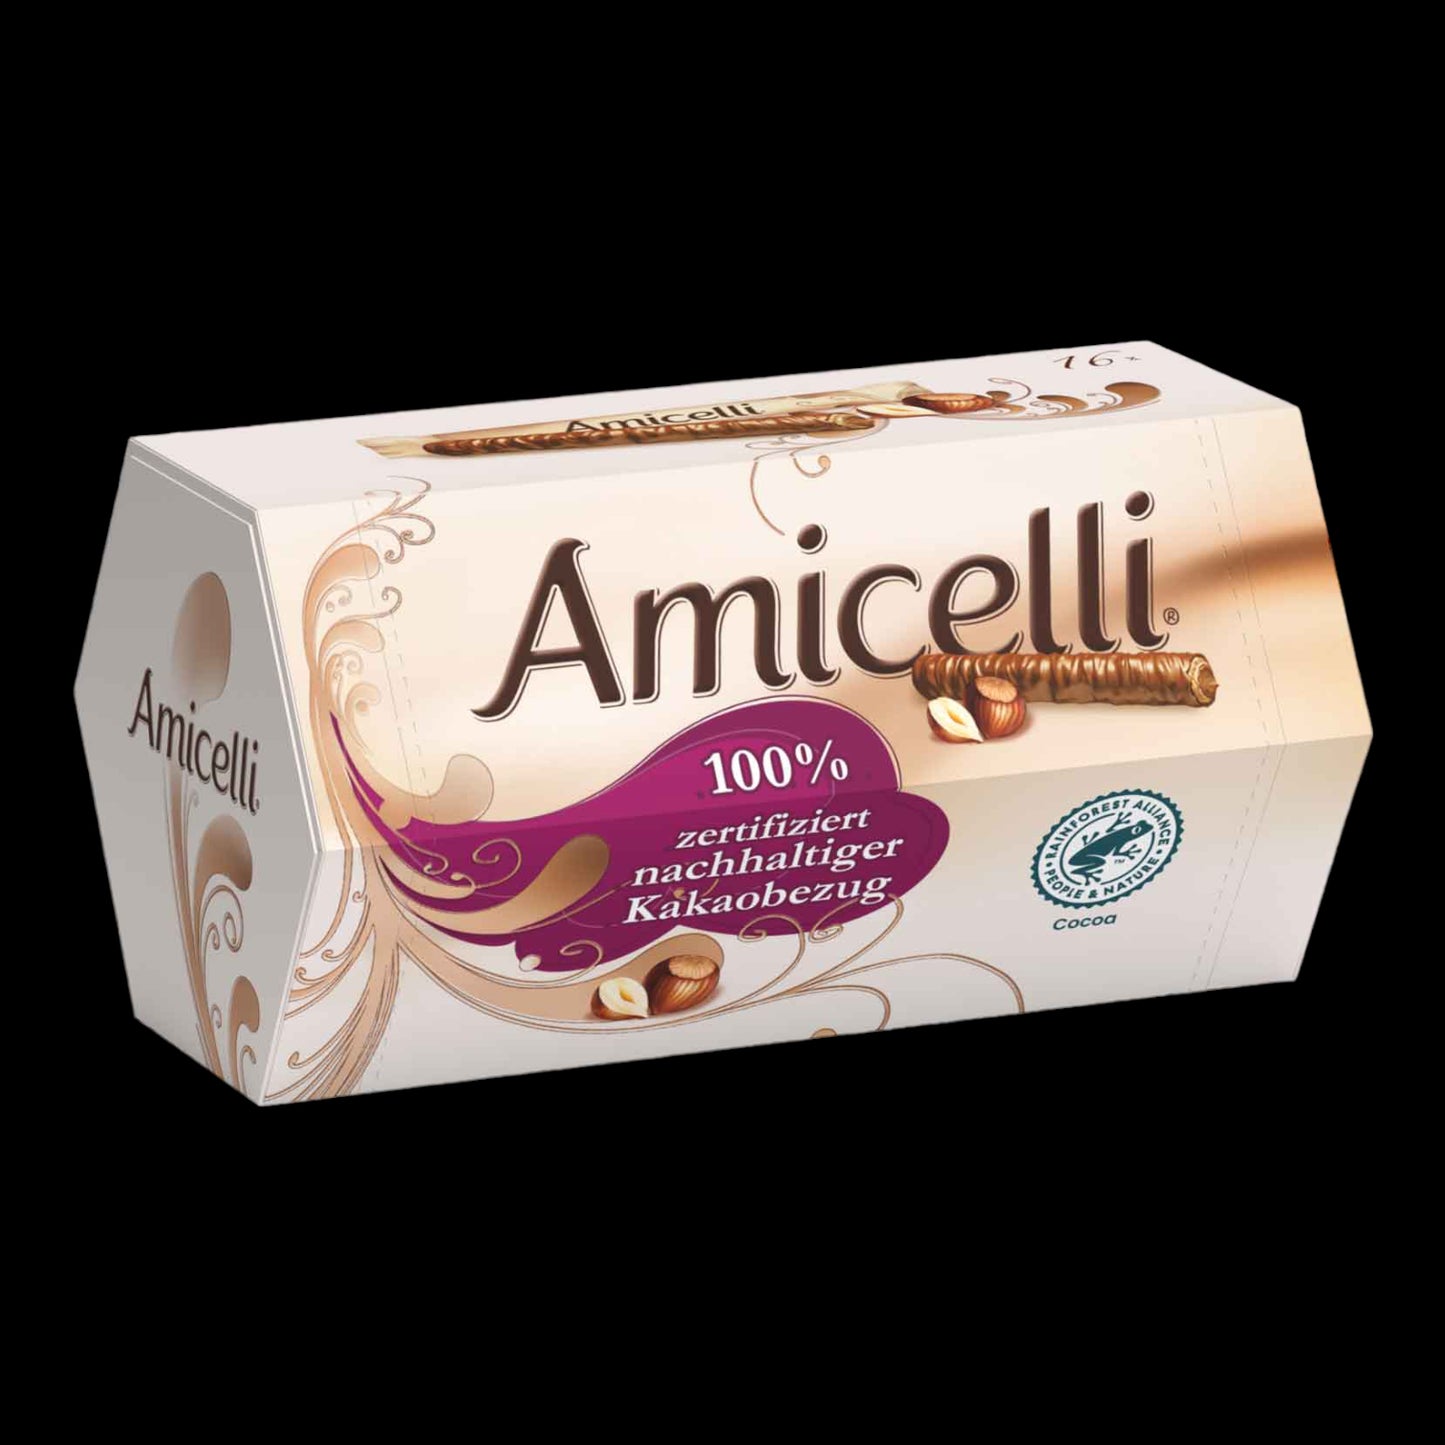 Amicelli 200g